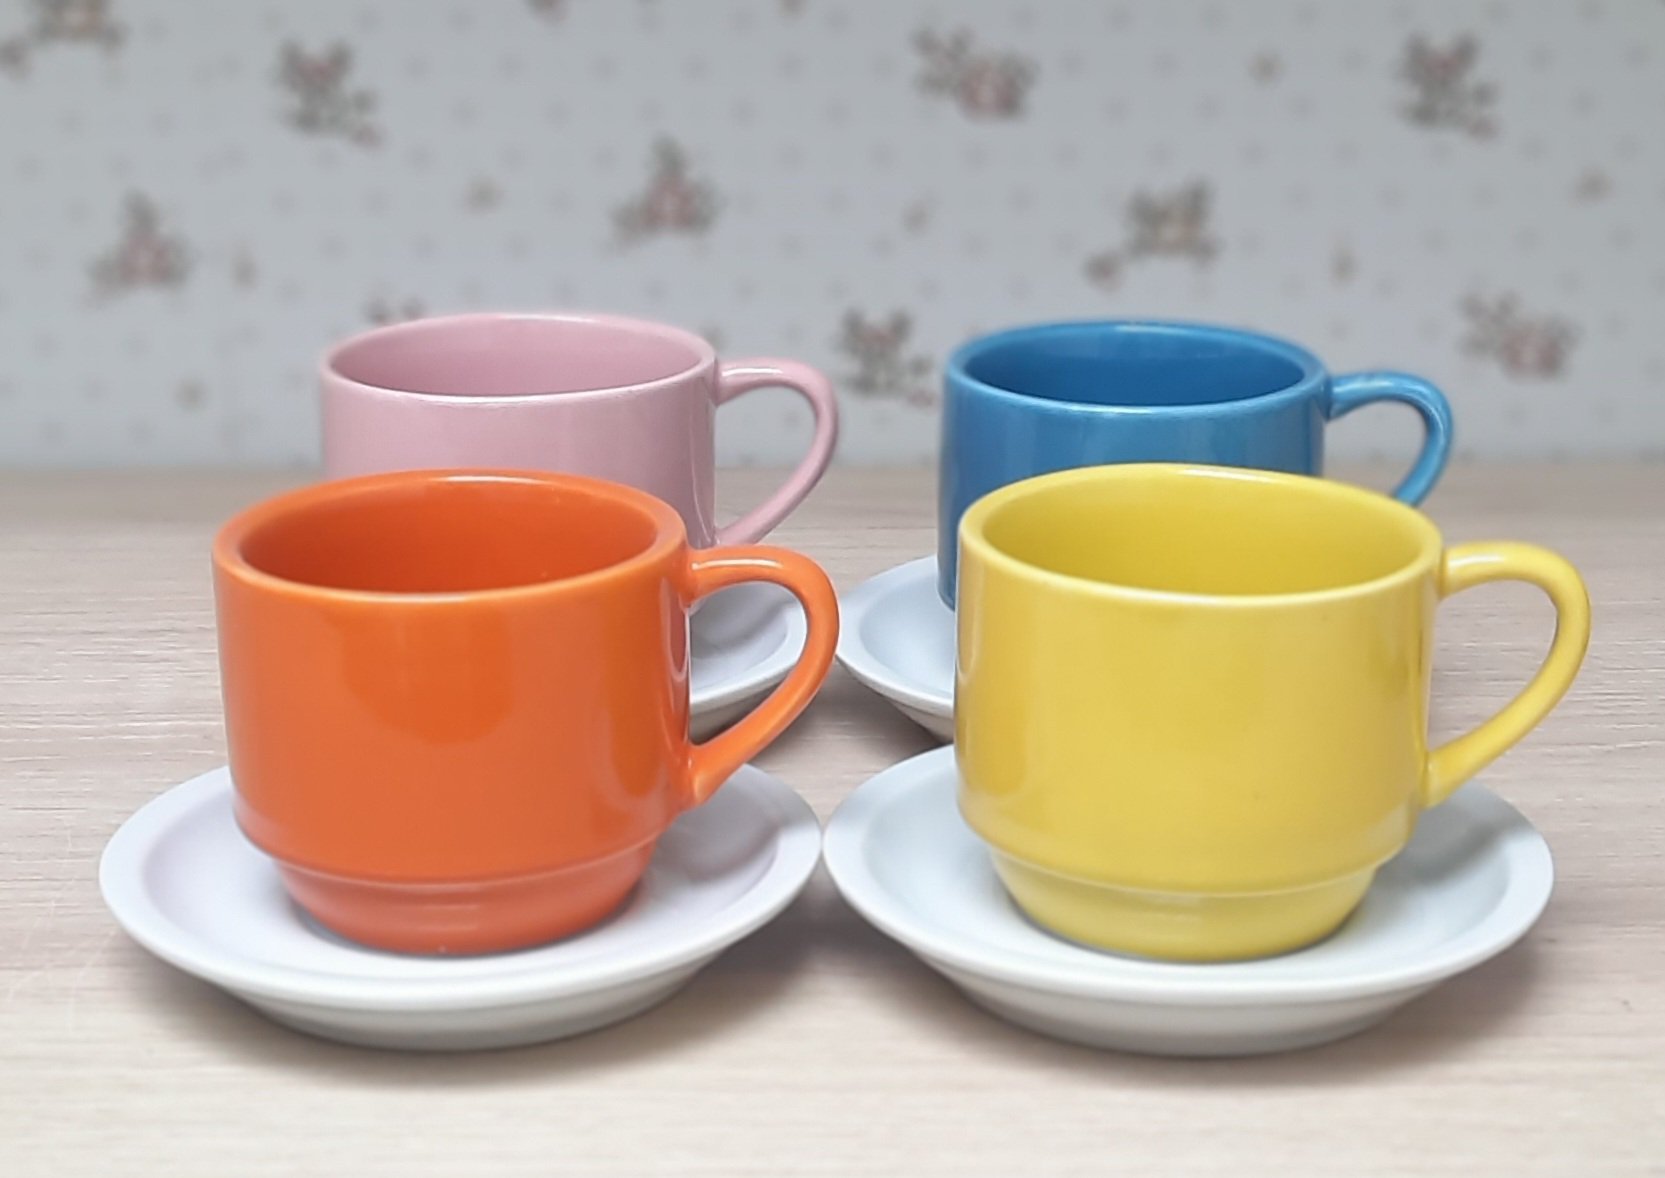 Jogo 4 xícaras de Café e Chá com pires - 200 ml Empilháveis - Porcelana Colorida - 4